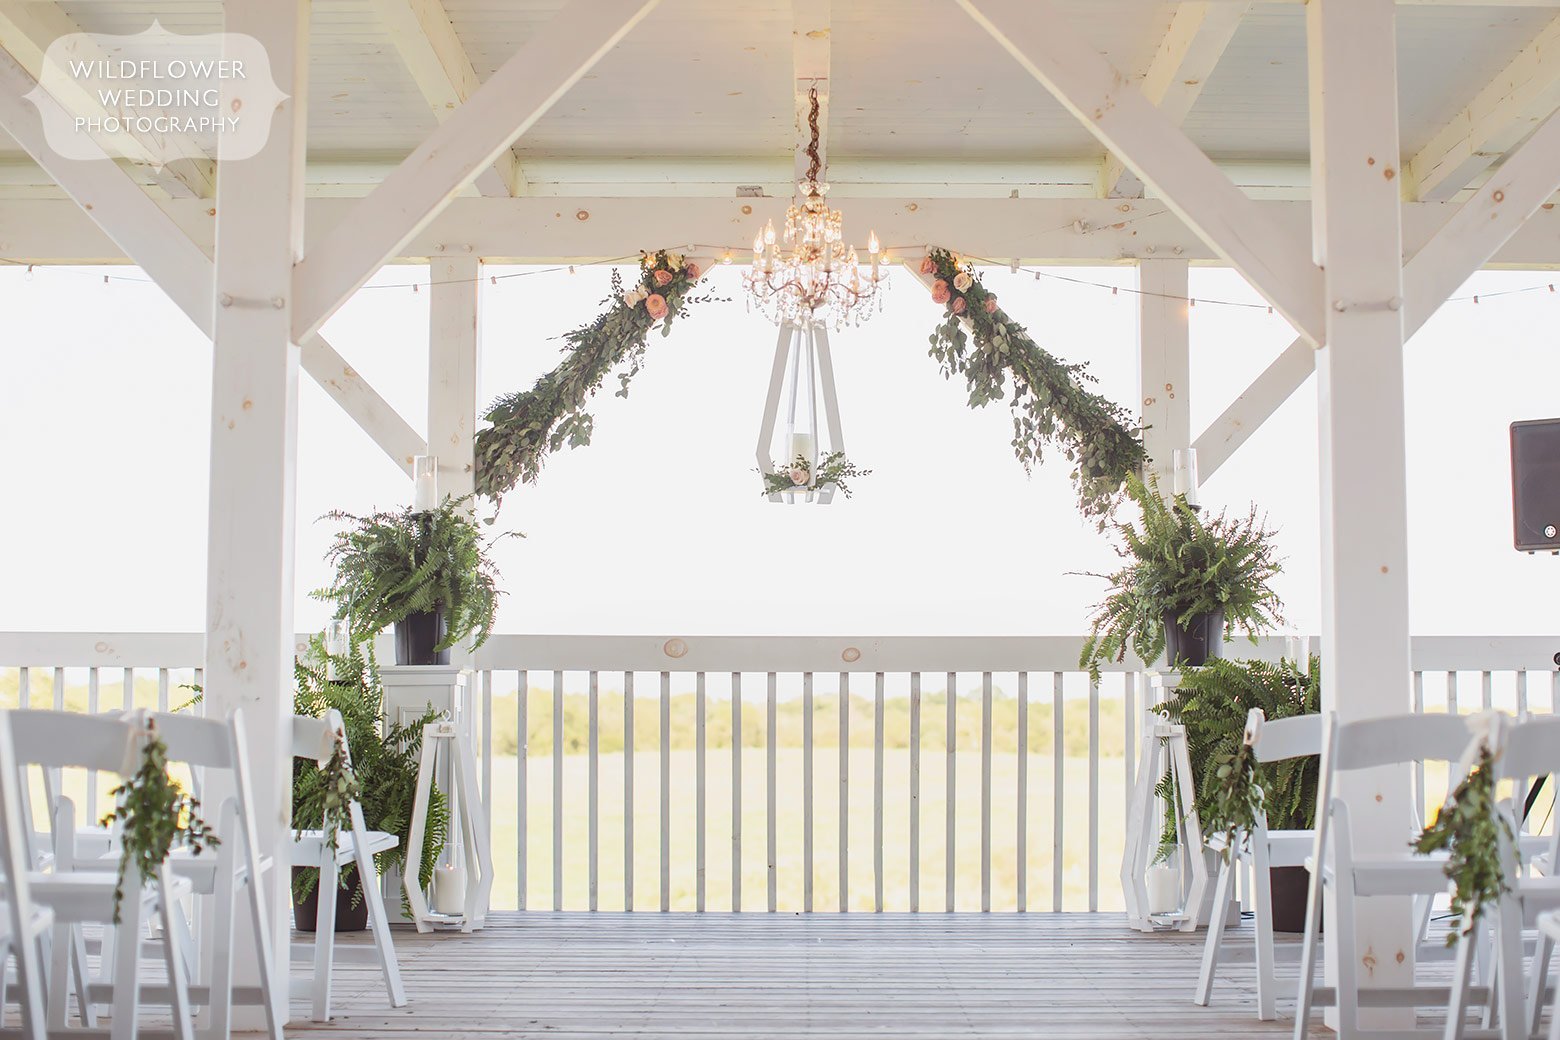 Stunning porch wedding venue in mid-Missouri.